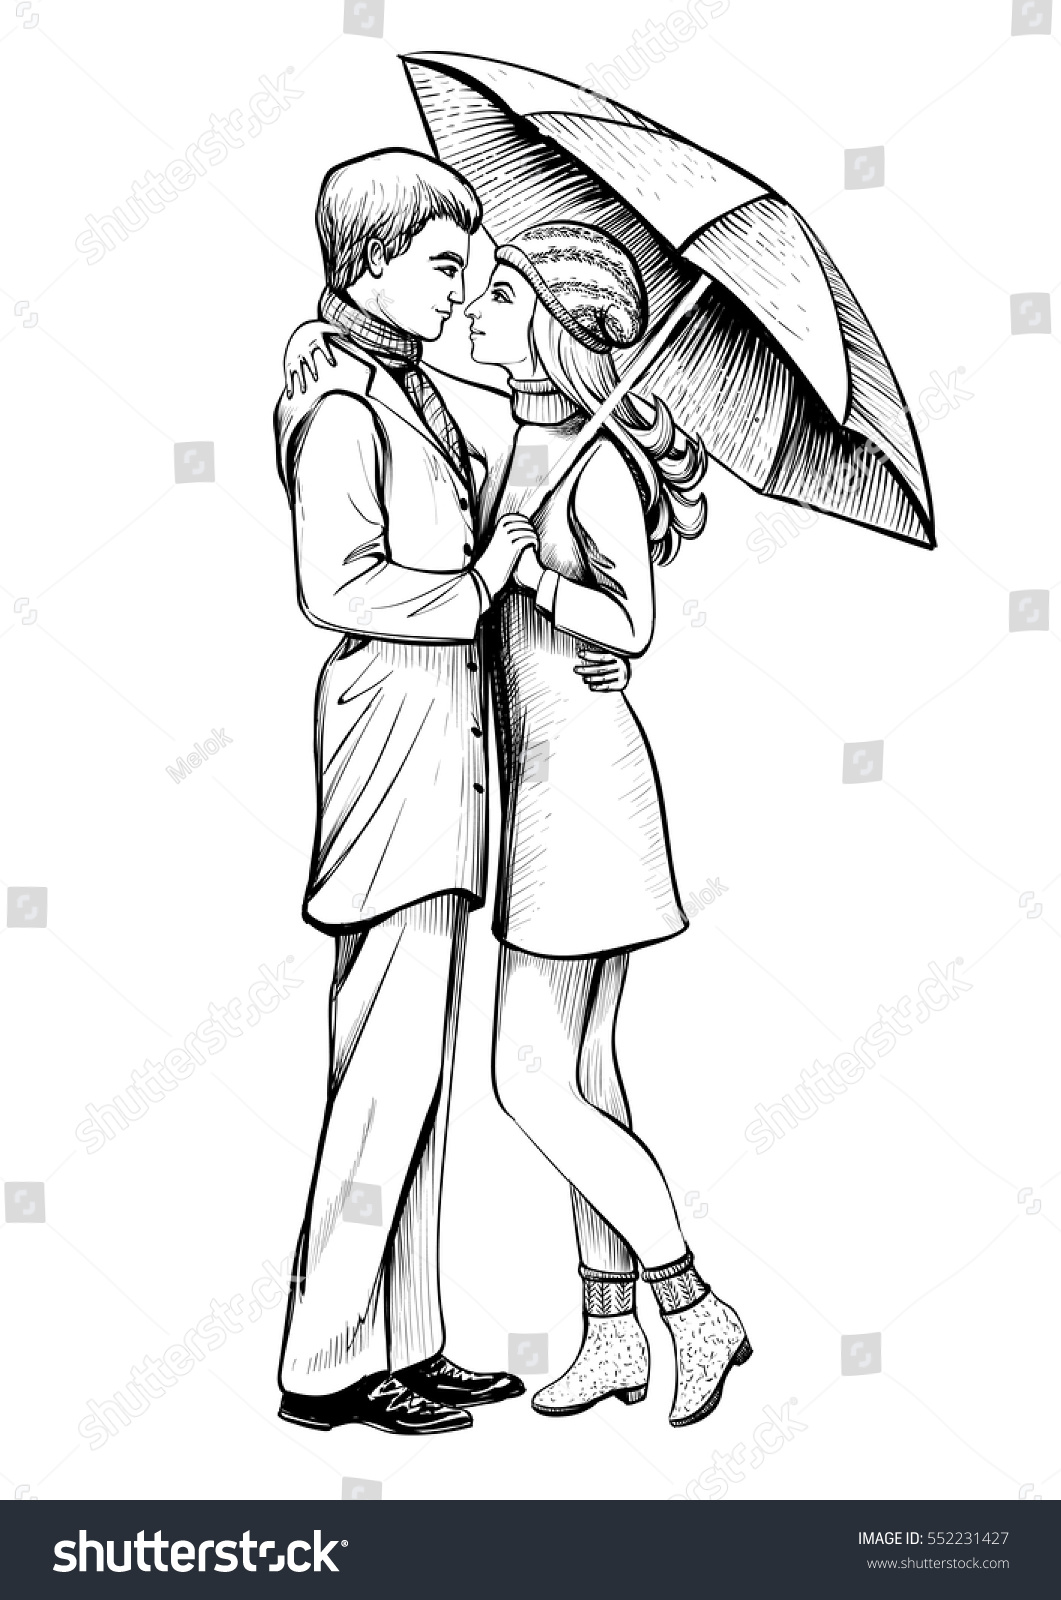 love under the umbrella